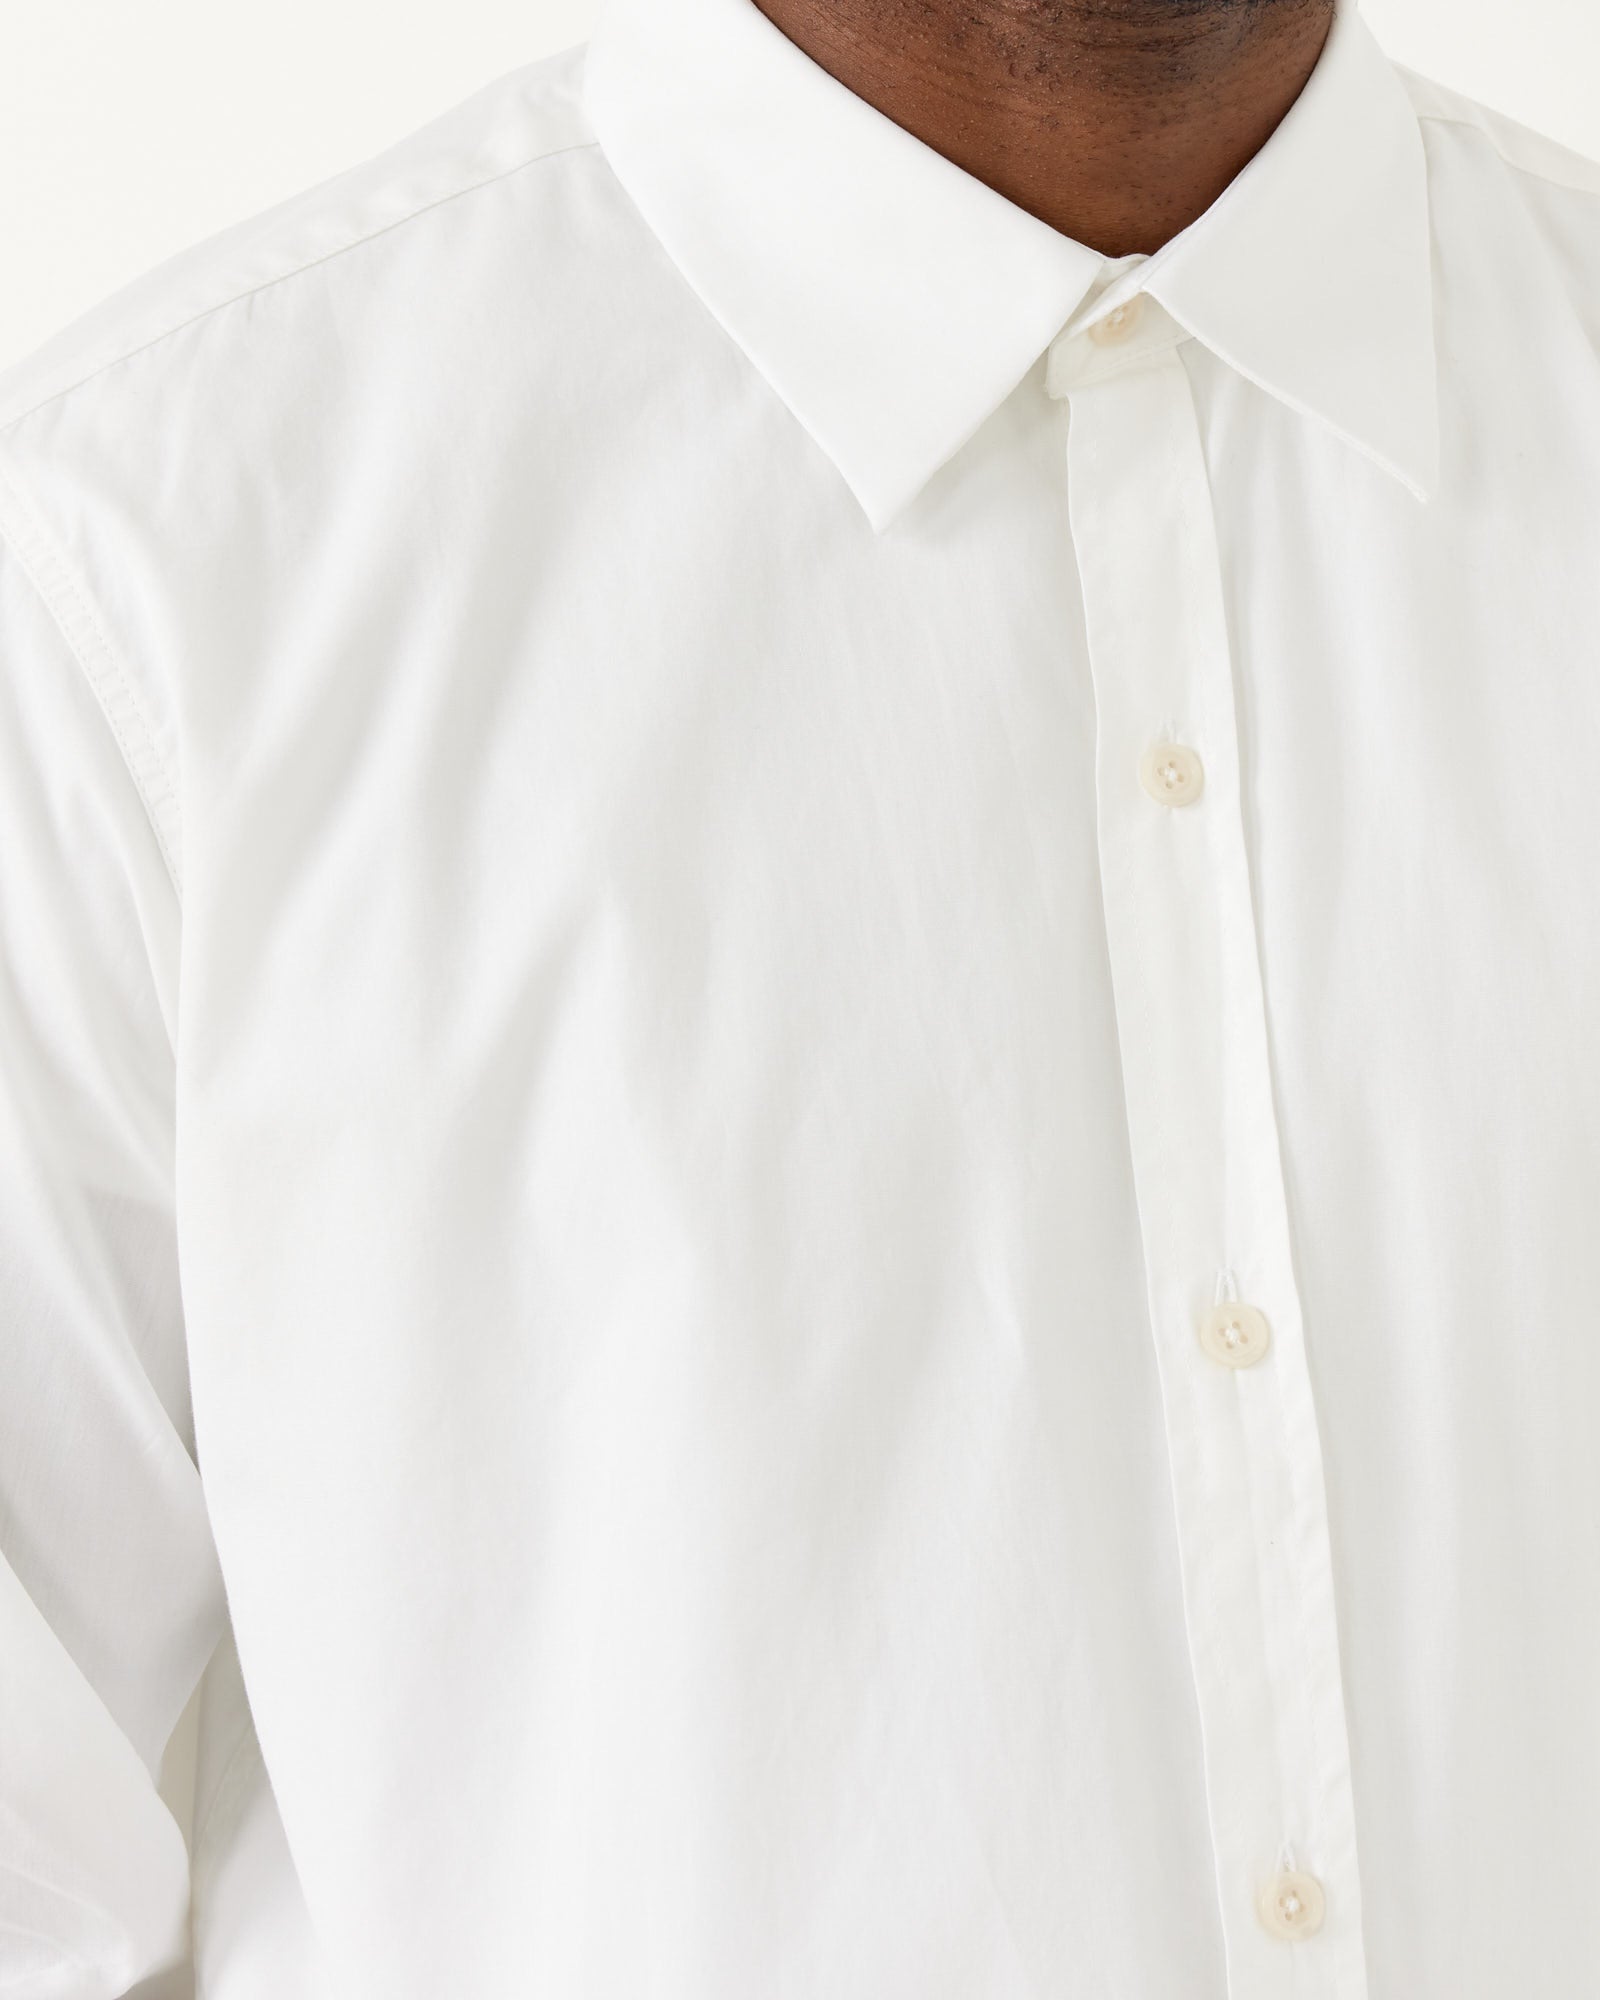 Banquet Shirt in White